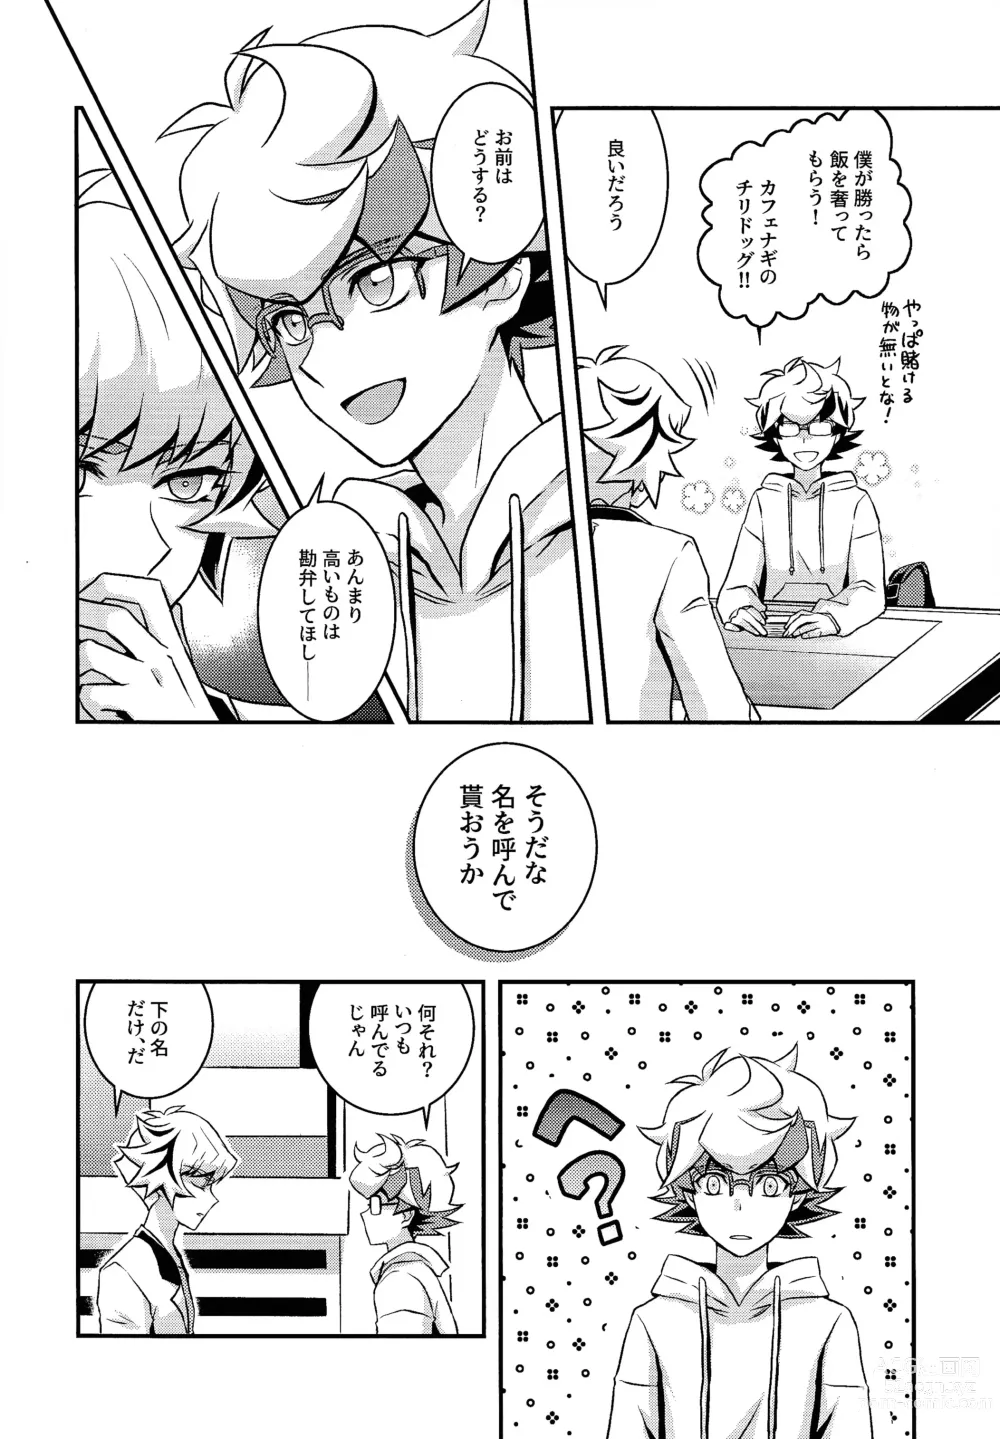 Page 9 of doujinshi Kettou de Kiite Miro - Ask in a duel